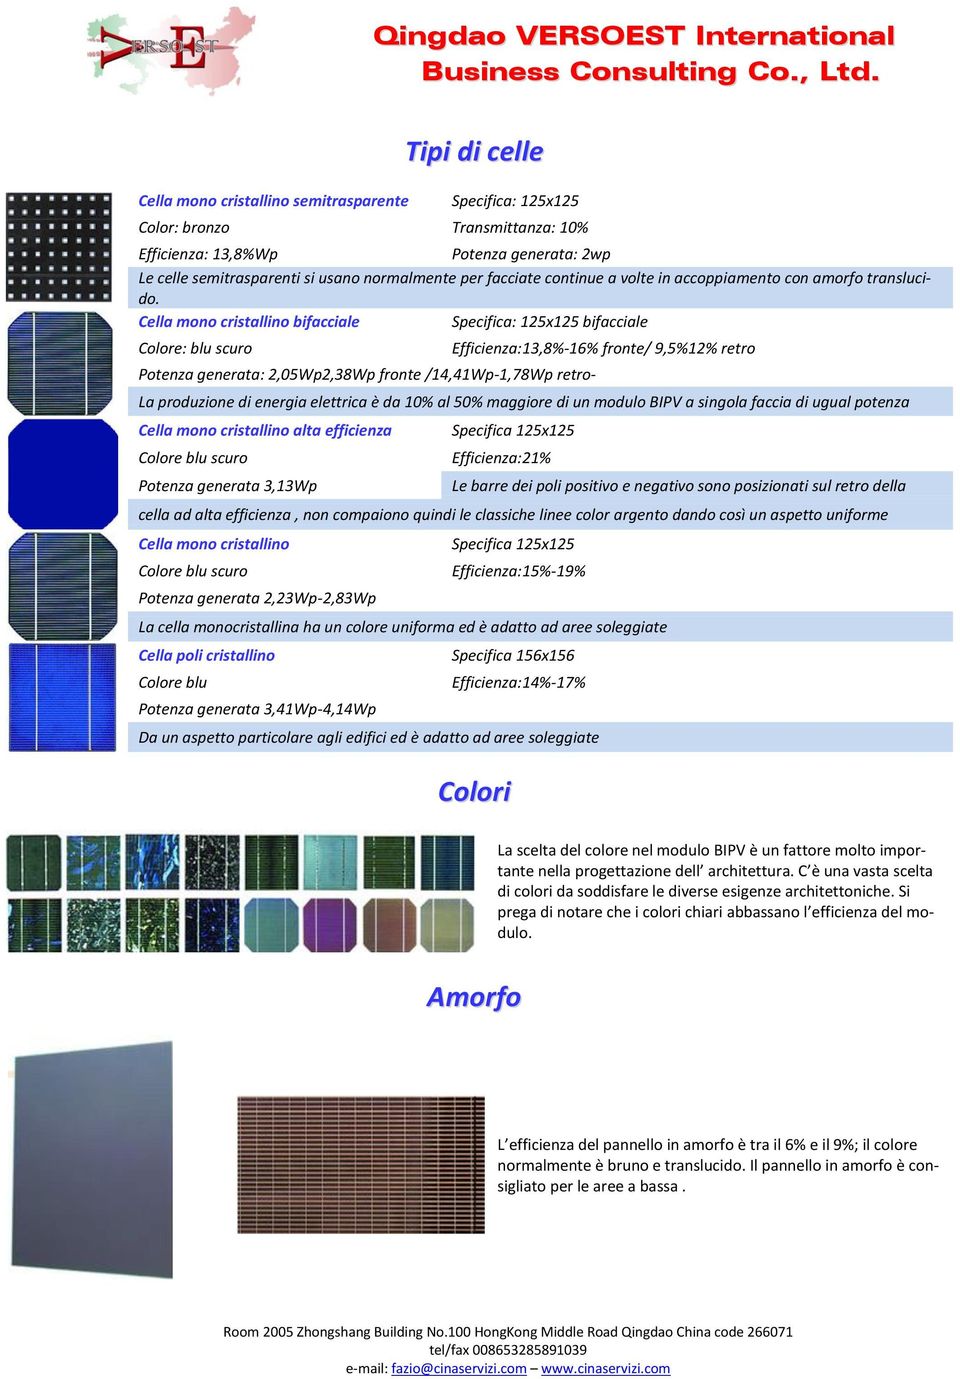 Cella mono cristallino bifacciale Specifica: 125x125 bifacciale Colore: blu scuro Potenza generata: 2,05Wp2,38Wp fronte /14,41Wp-1,78Wp retro- Efficienza:13,8%-16% fronte/ 9,5%12% retro La produzione